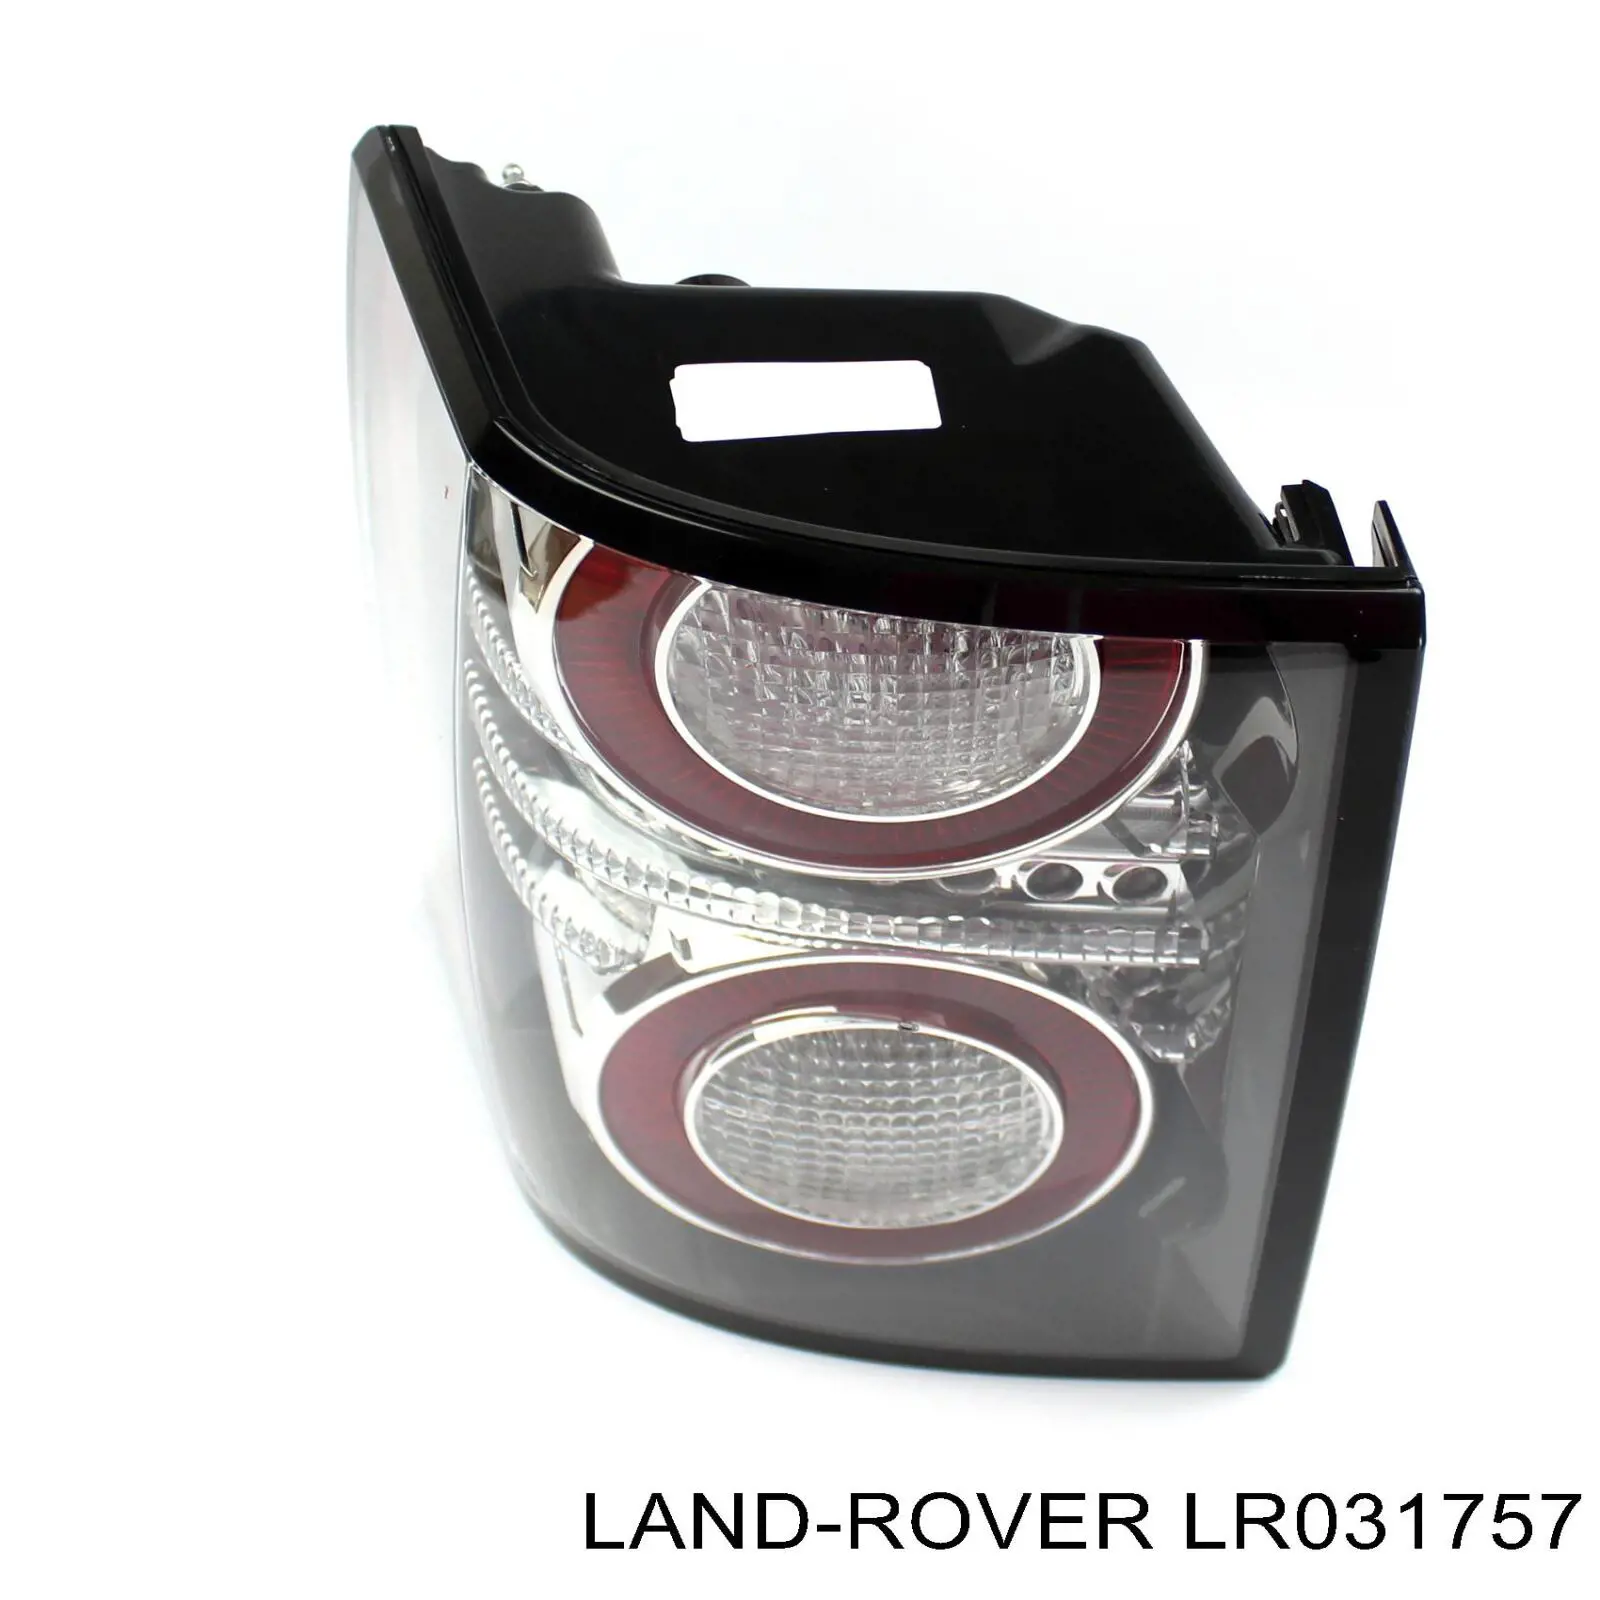 LR031757 Land Rover lanterna traseira esquerda